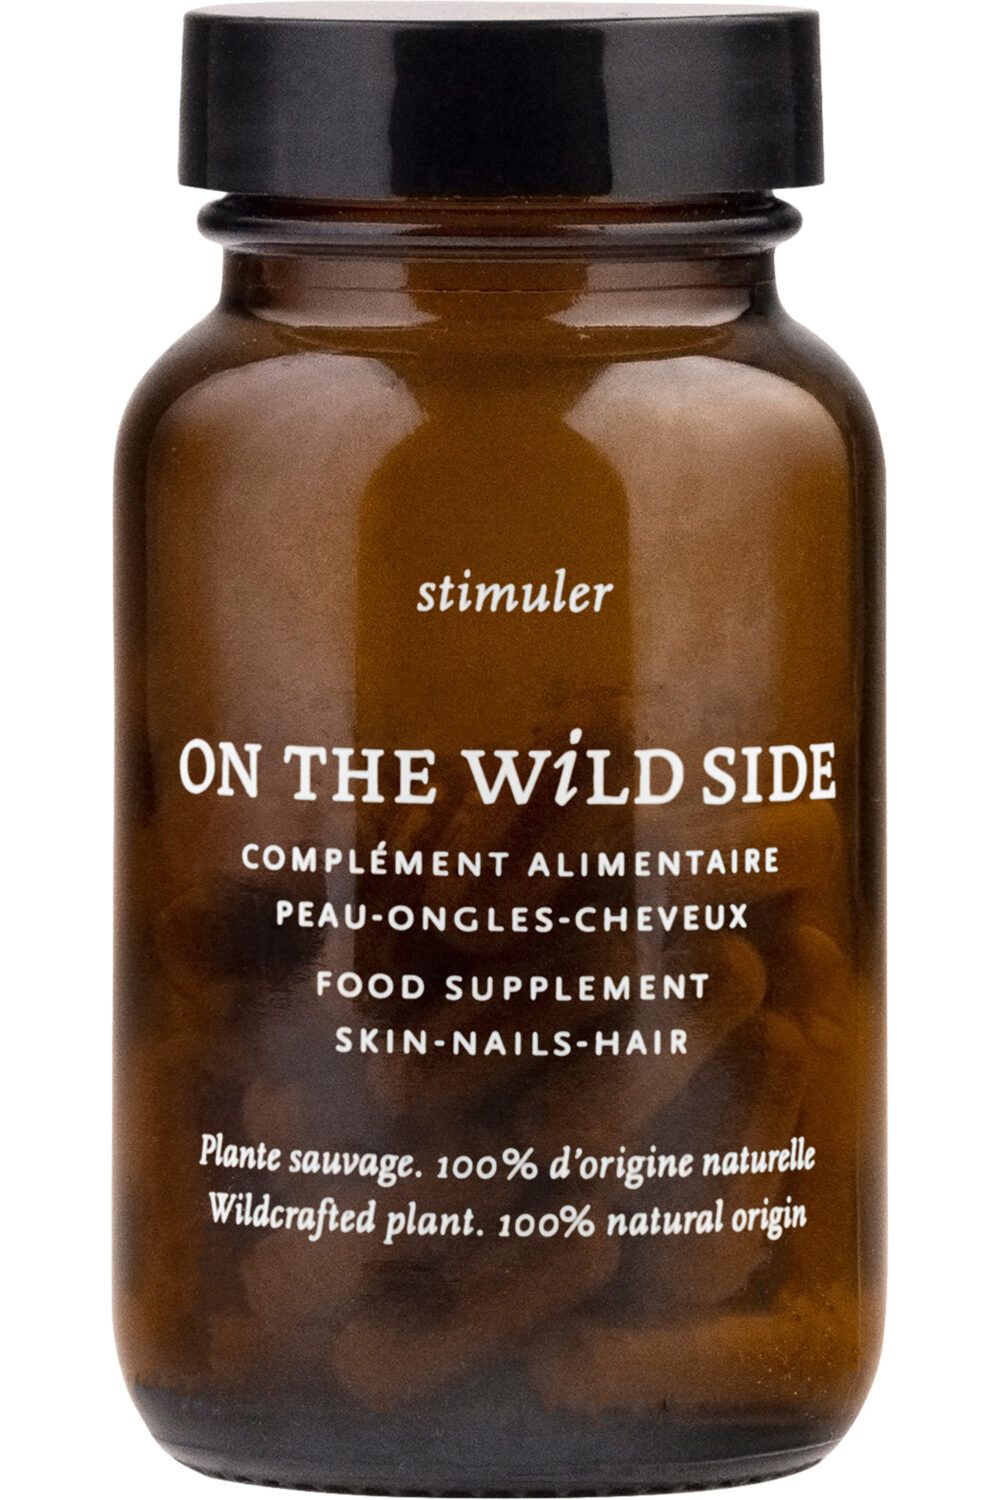 On The Wild Side - Complément alimentaire pour la peau, les ongles et les cheveux Cure de 1 mois